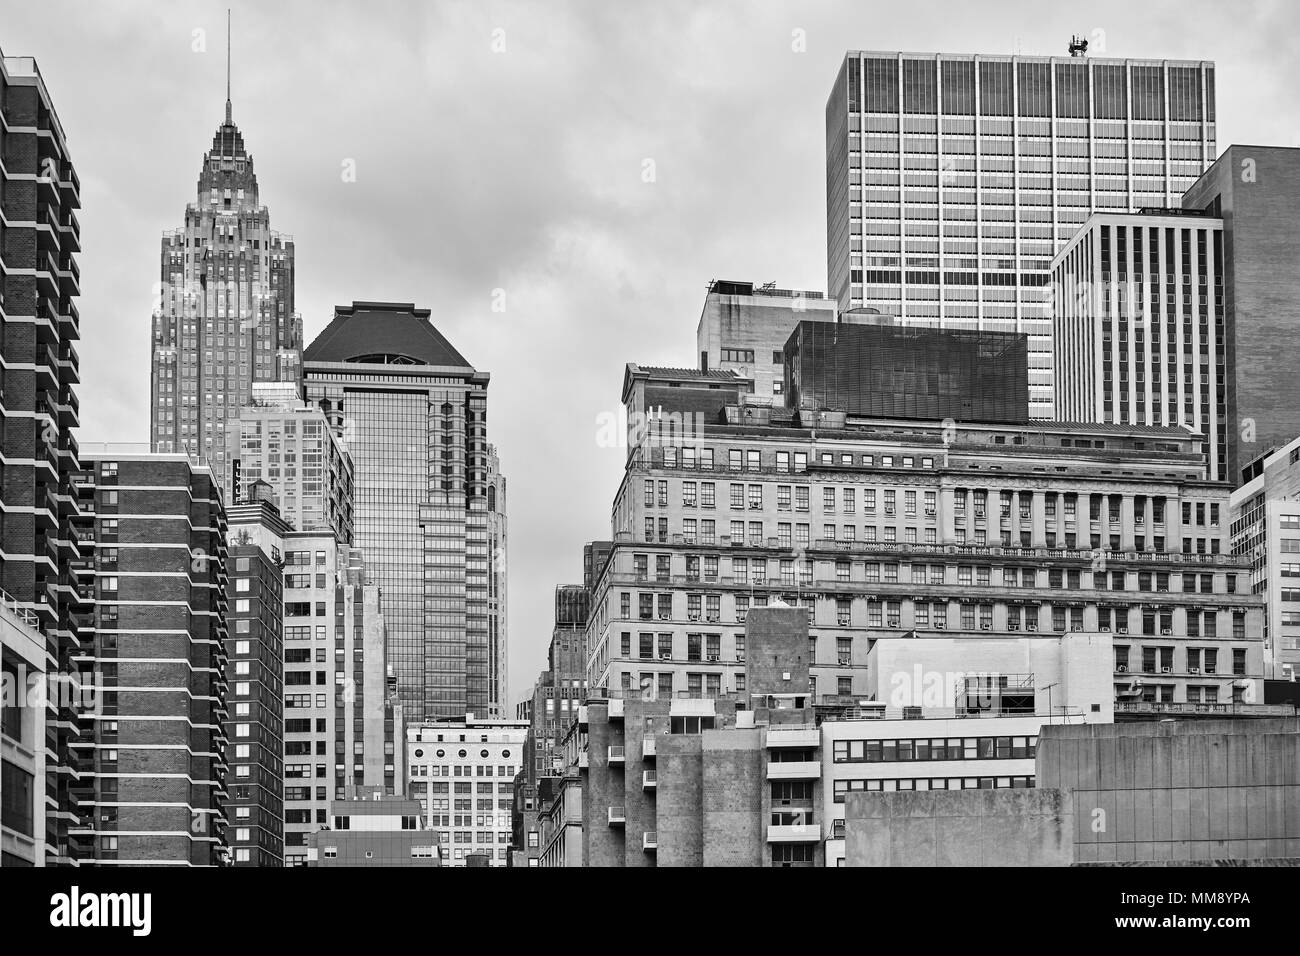 Photo noir et blanc de l'architecture de la ville de New York, USA. Banque D'Images